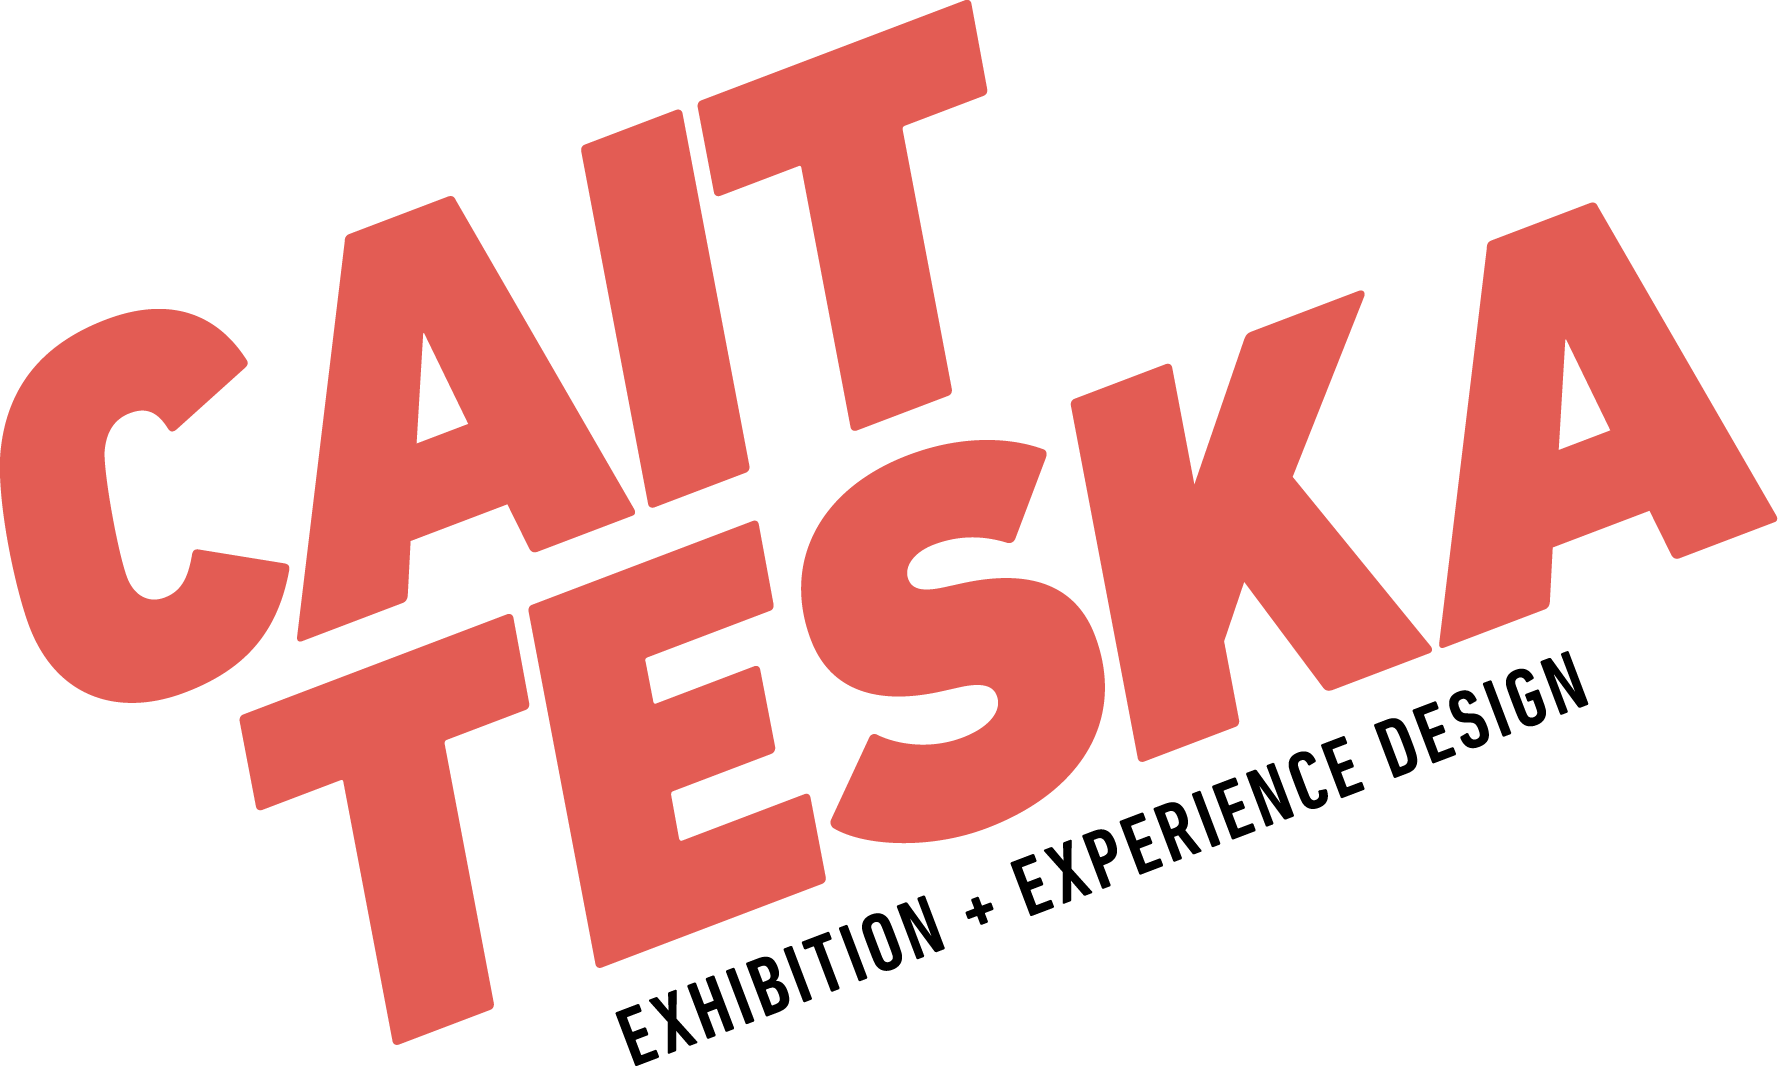 CAIT TESKA